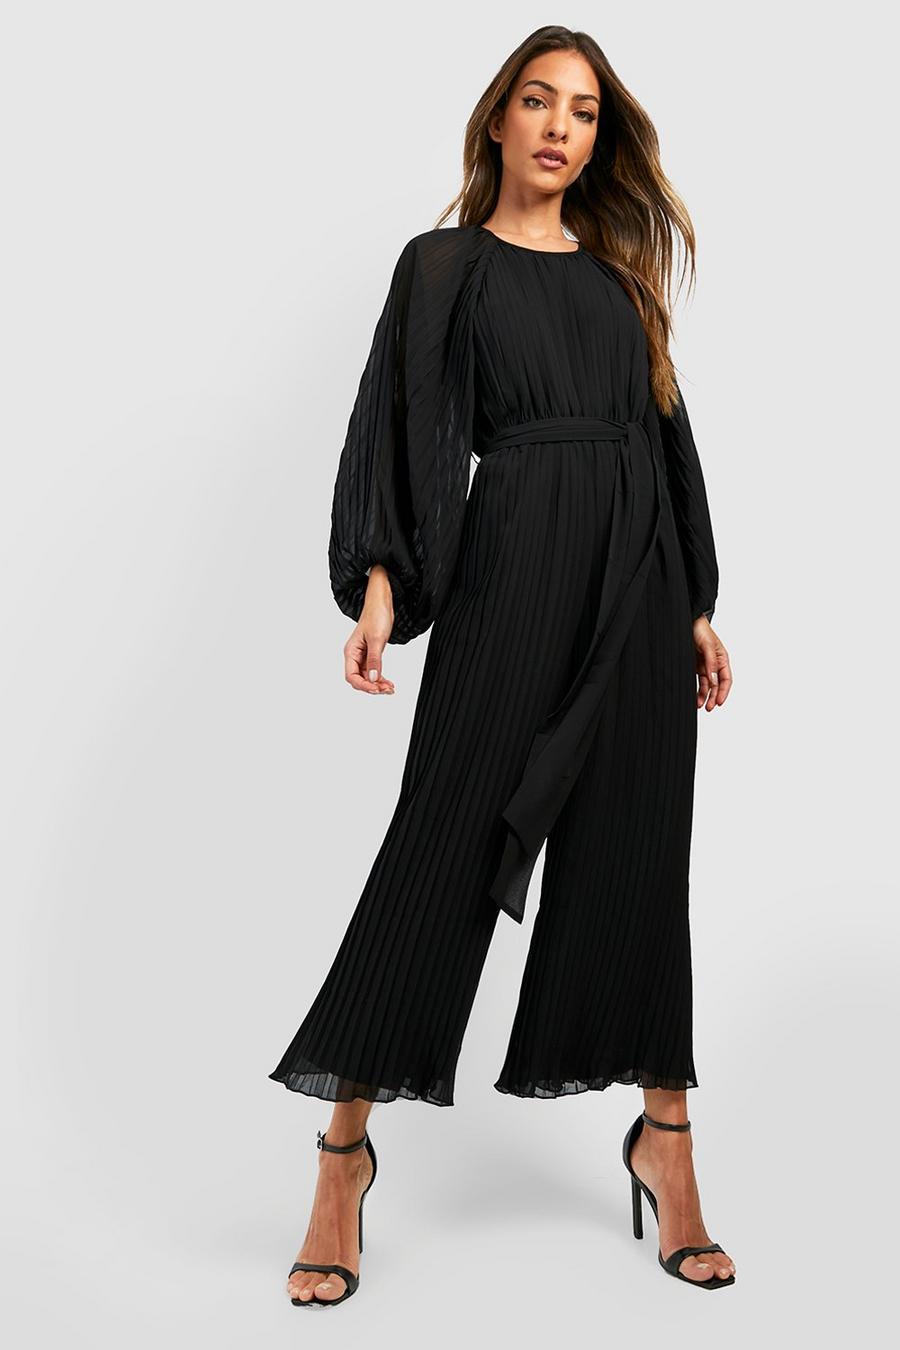 Buy Black Long Sleeve Plissé Jumpsuit from the Next UK online shop